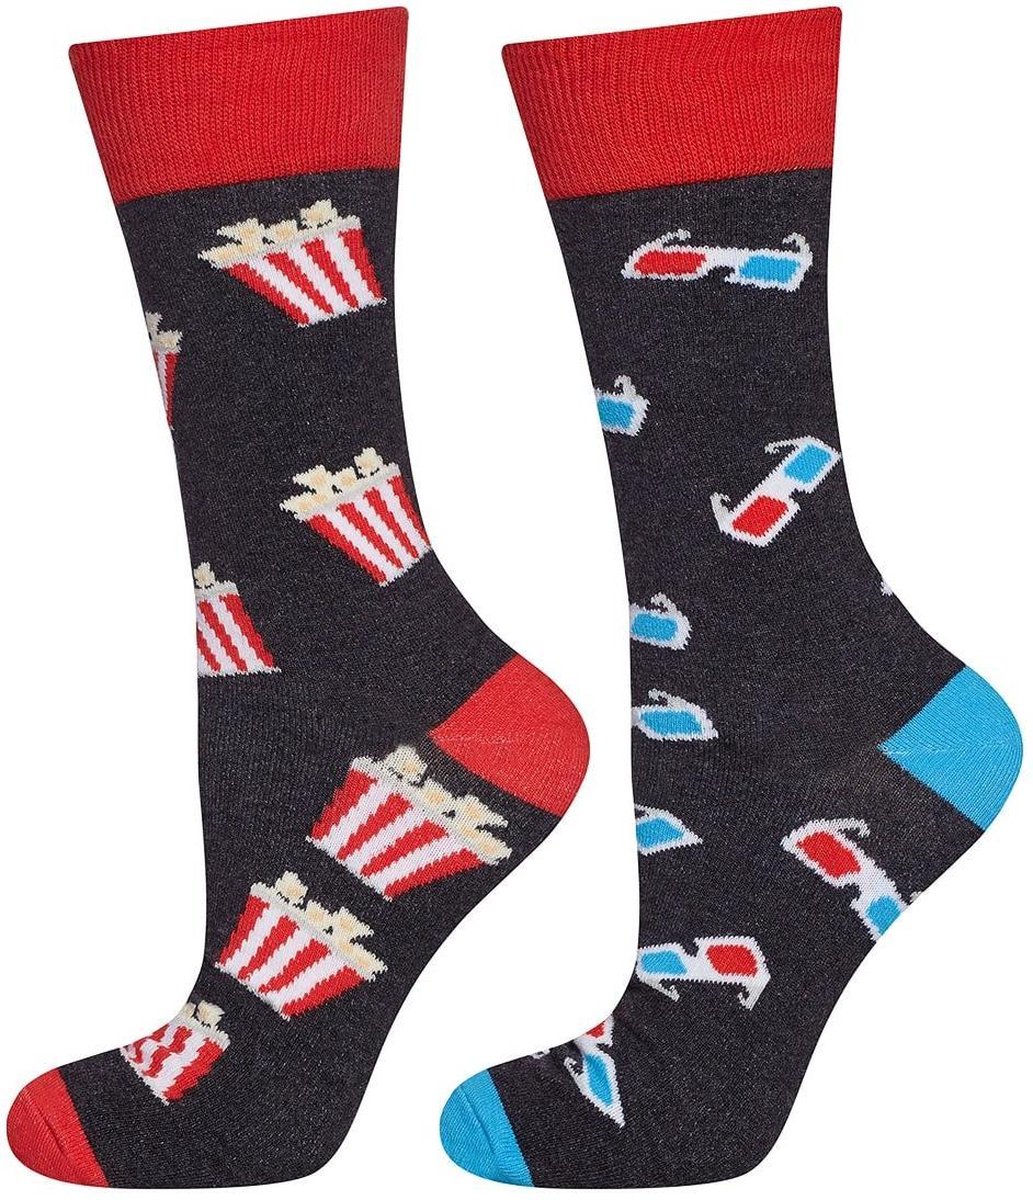 vrolijke sokken Bioscoop maat 40 - 45 twee verschillende sokken